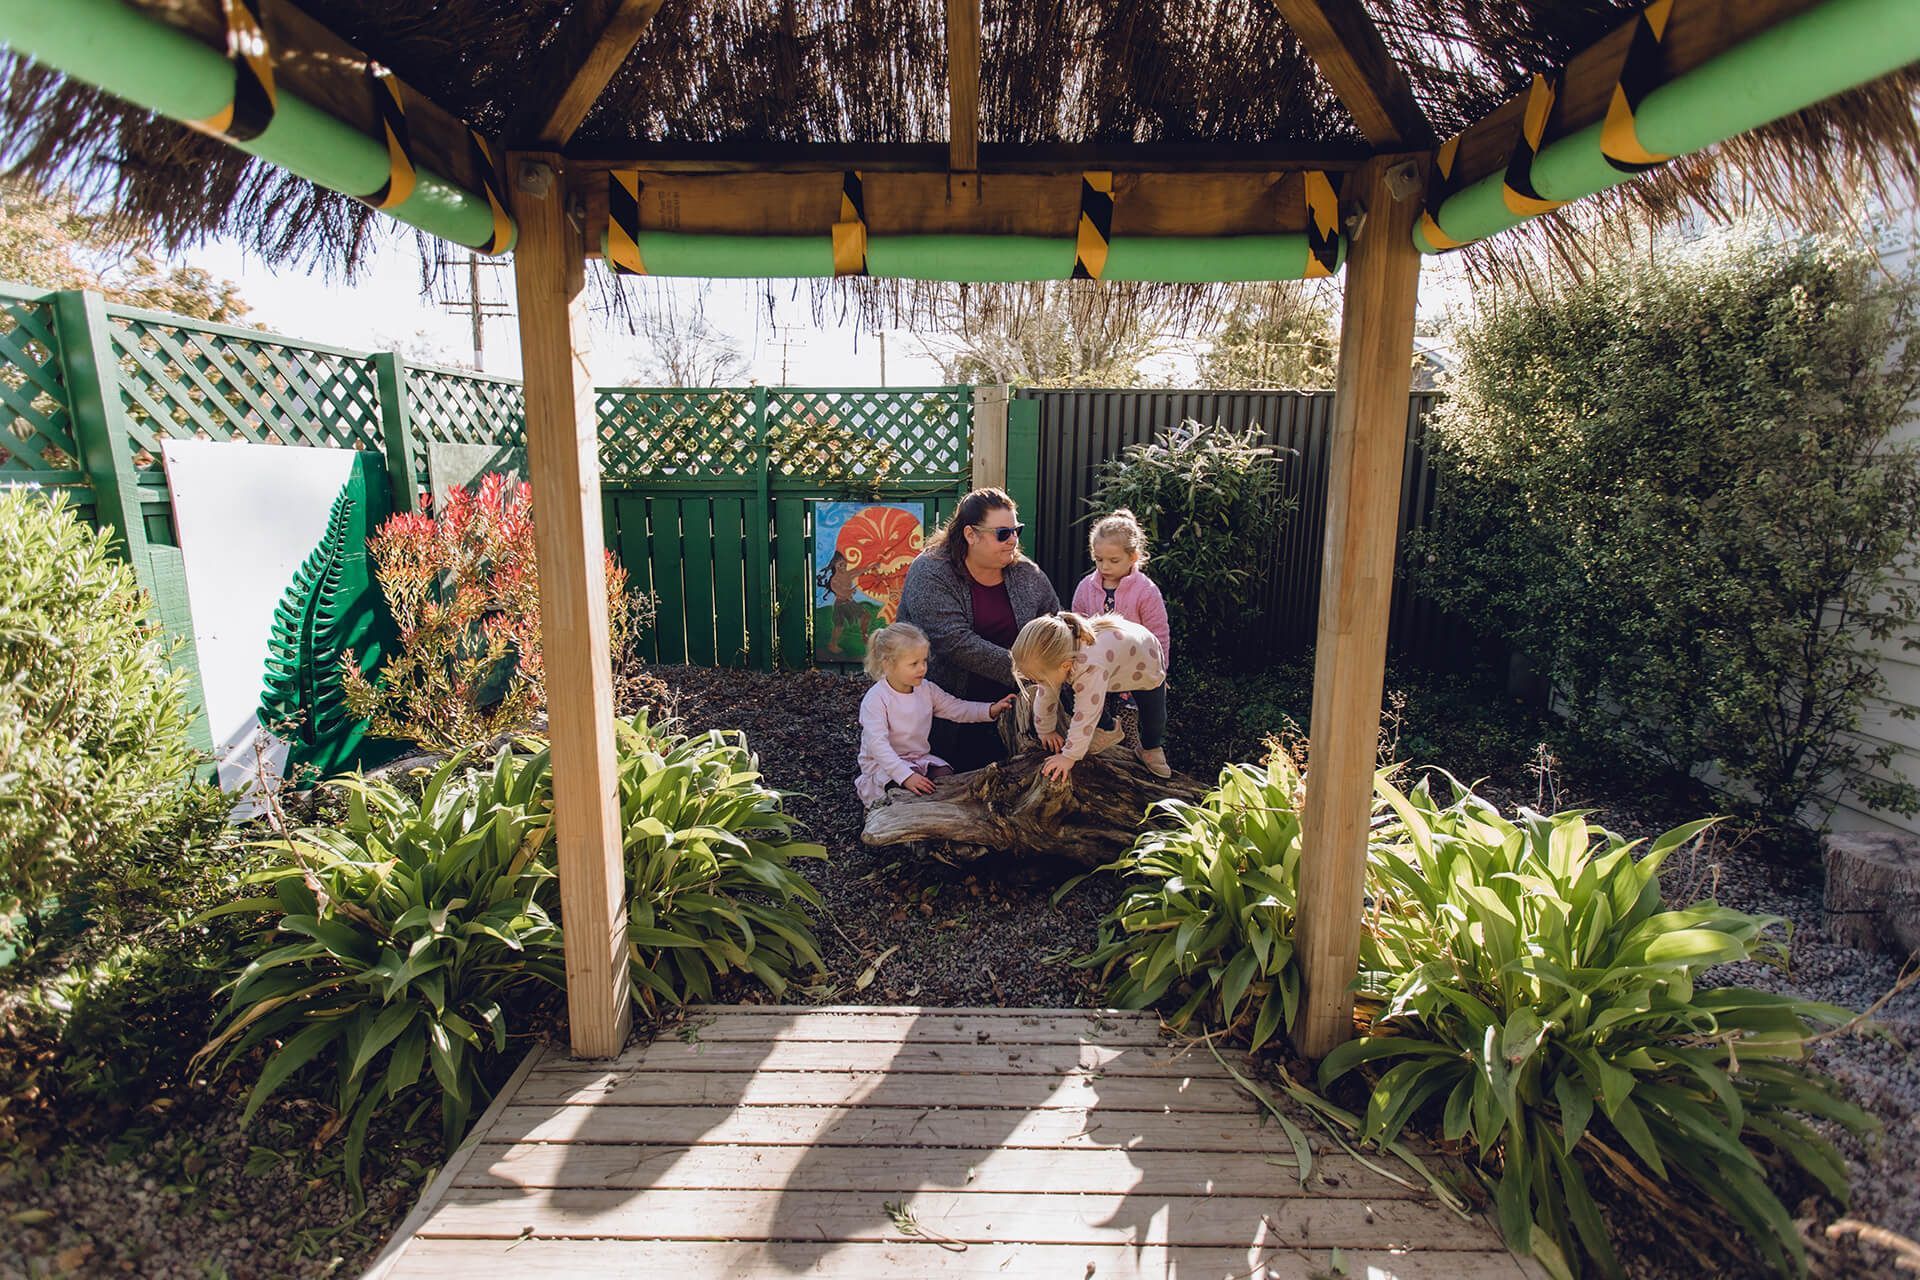 Springlands Kindergarten in Marlborough, New Zealand